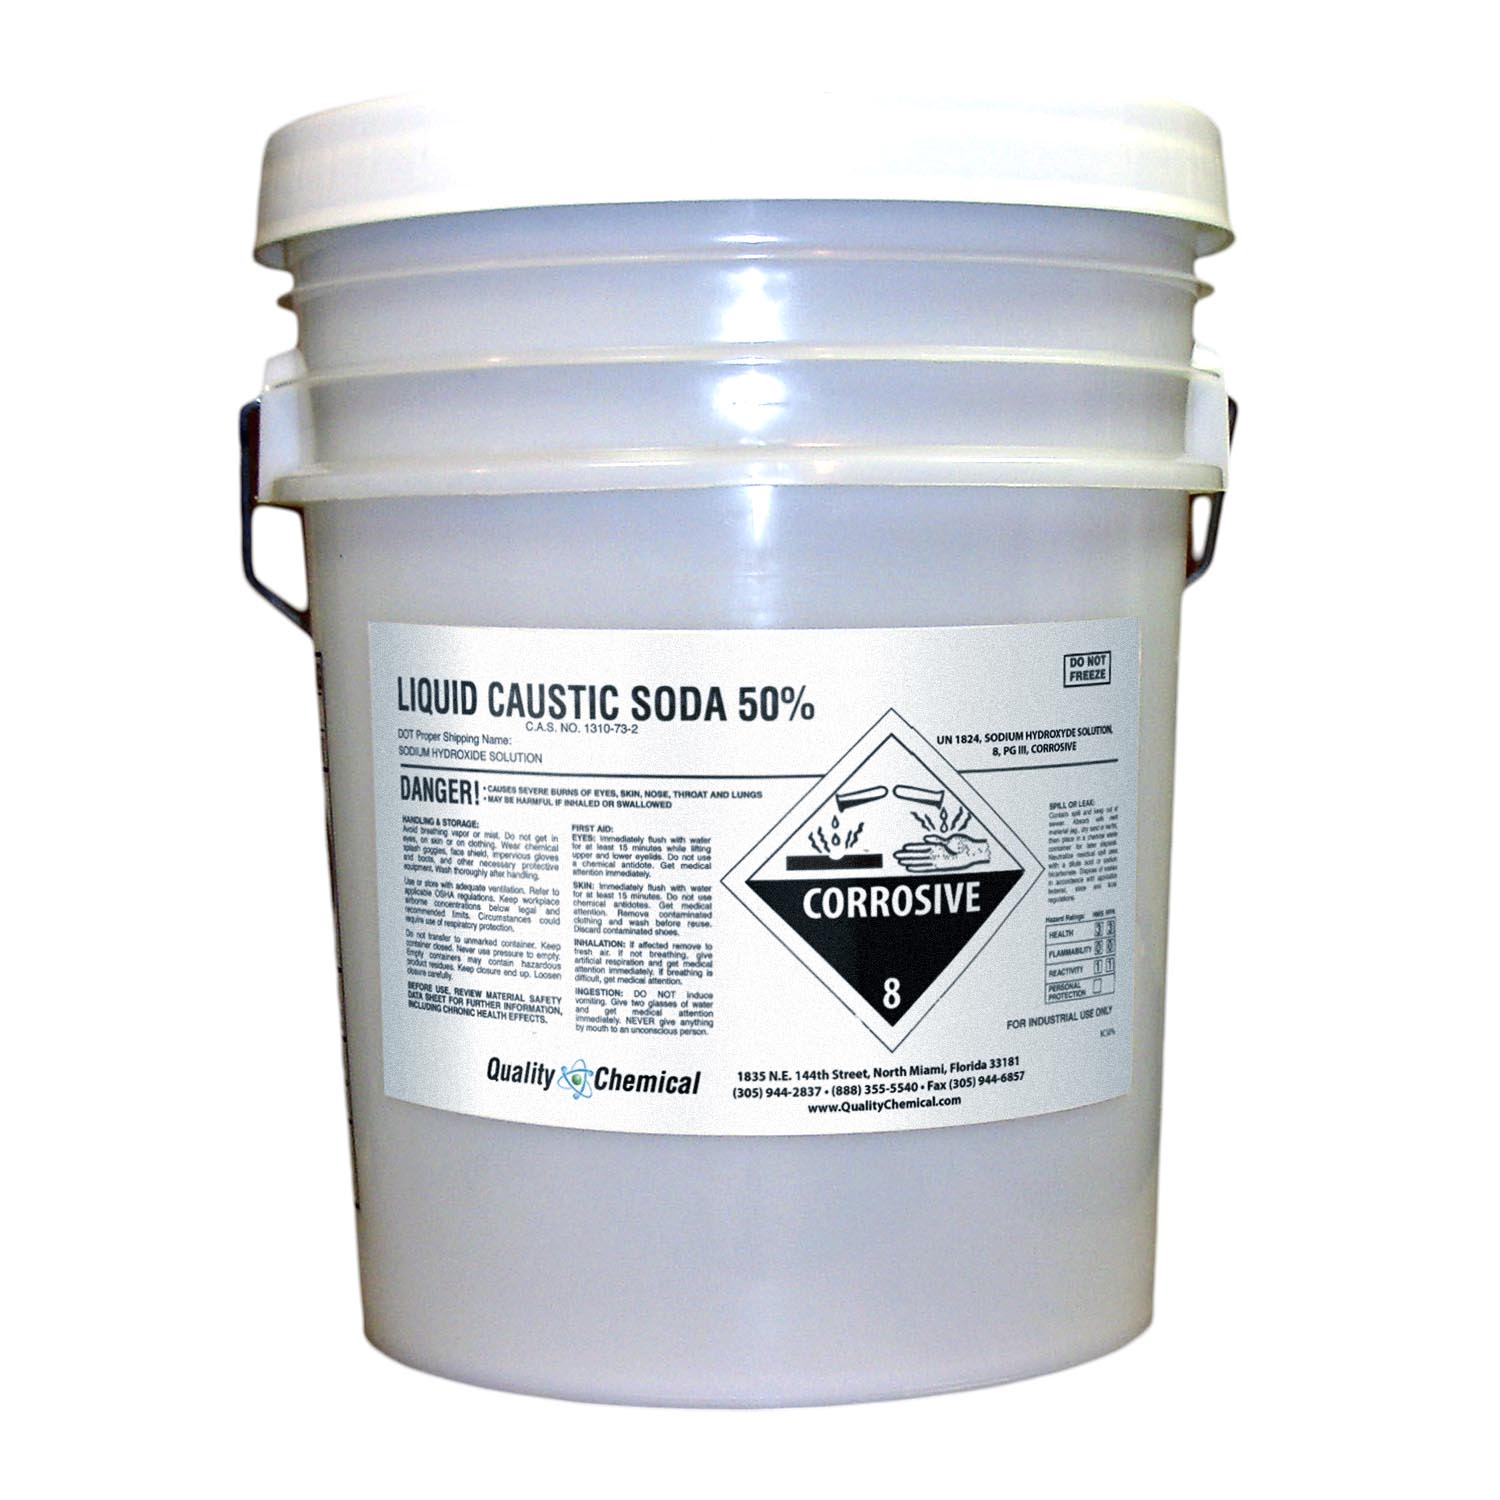 Quality Chemical Company - Sodium Hydroxide Liquid (Caustic Soda) - 50%